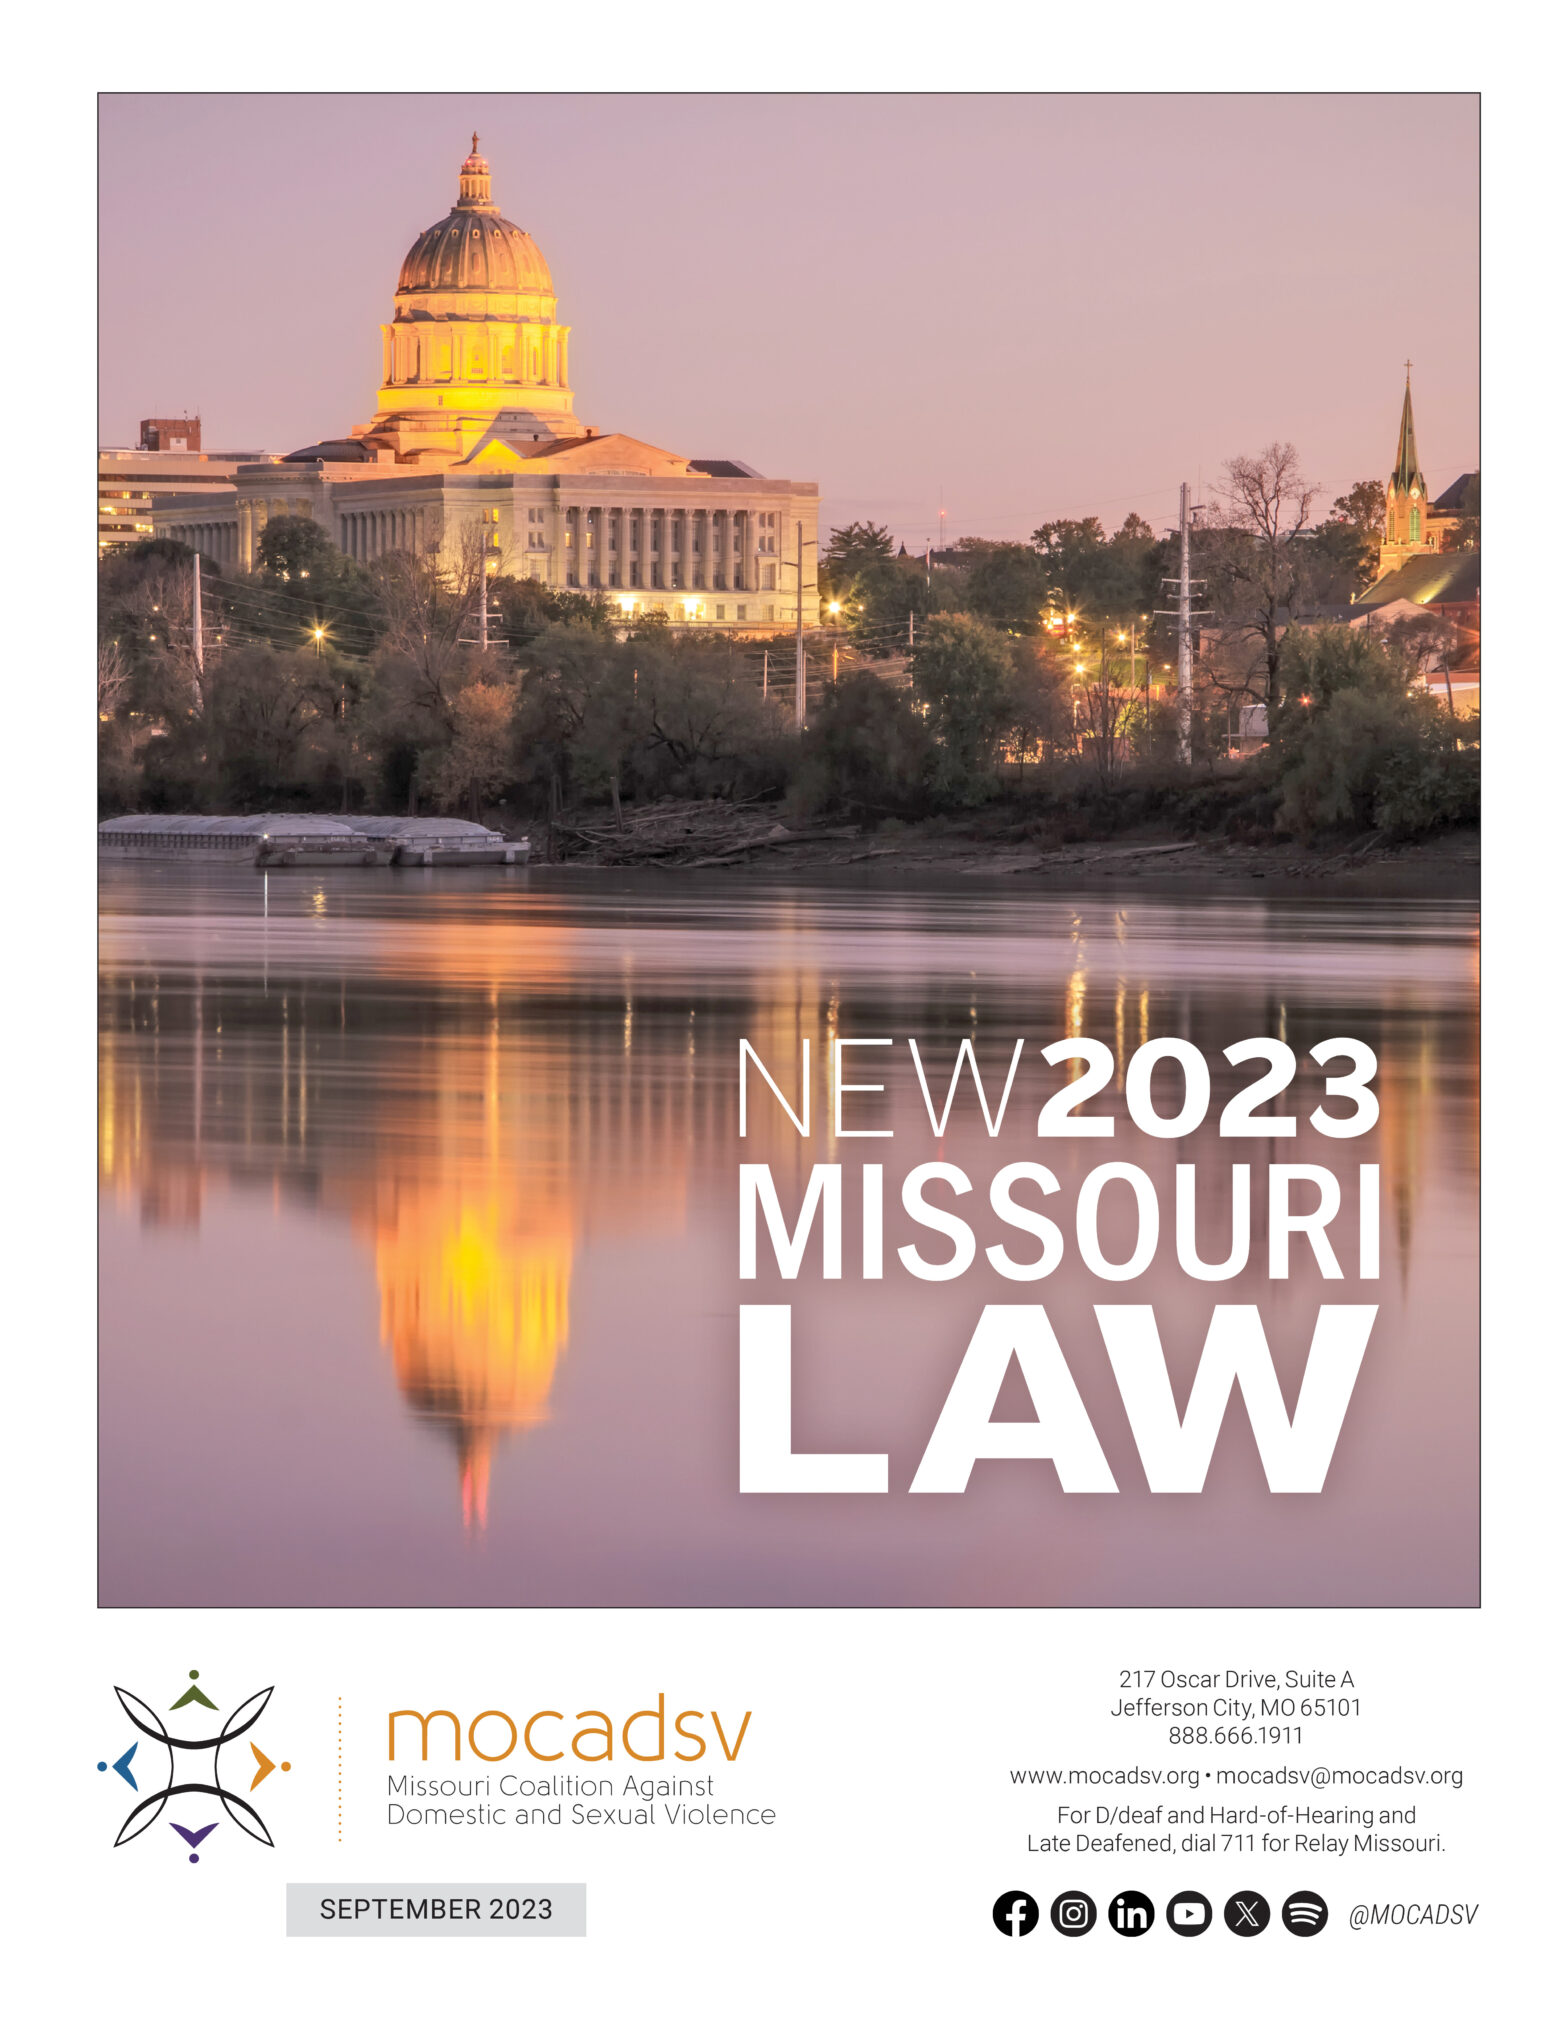 New 2023 Missouri Law